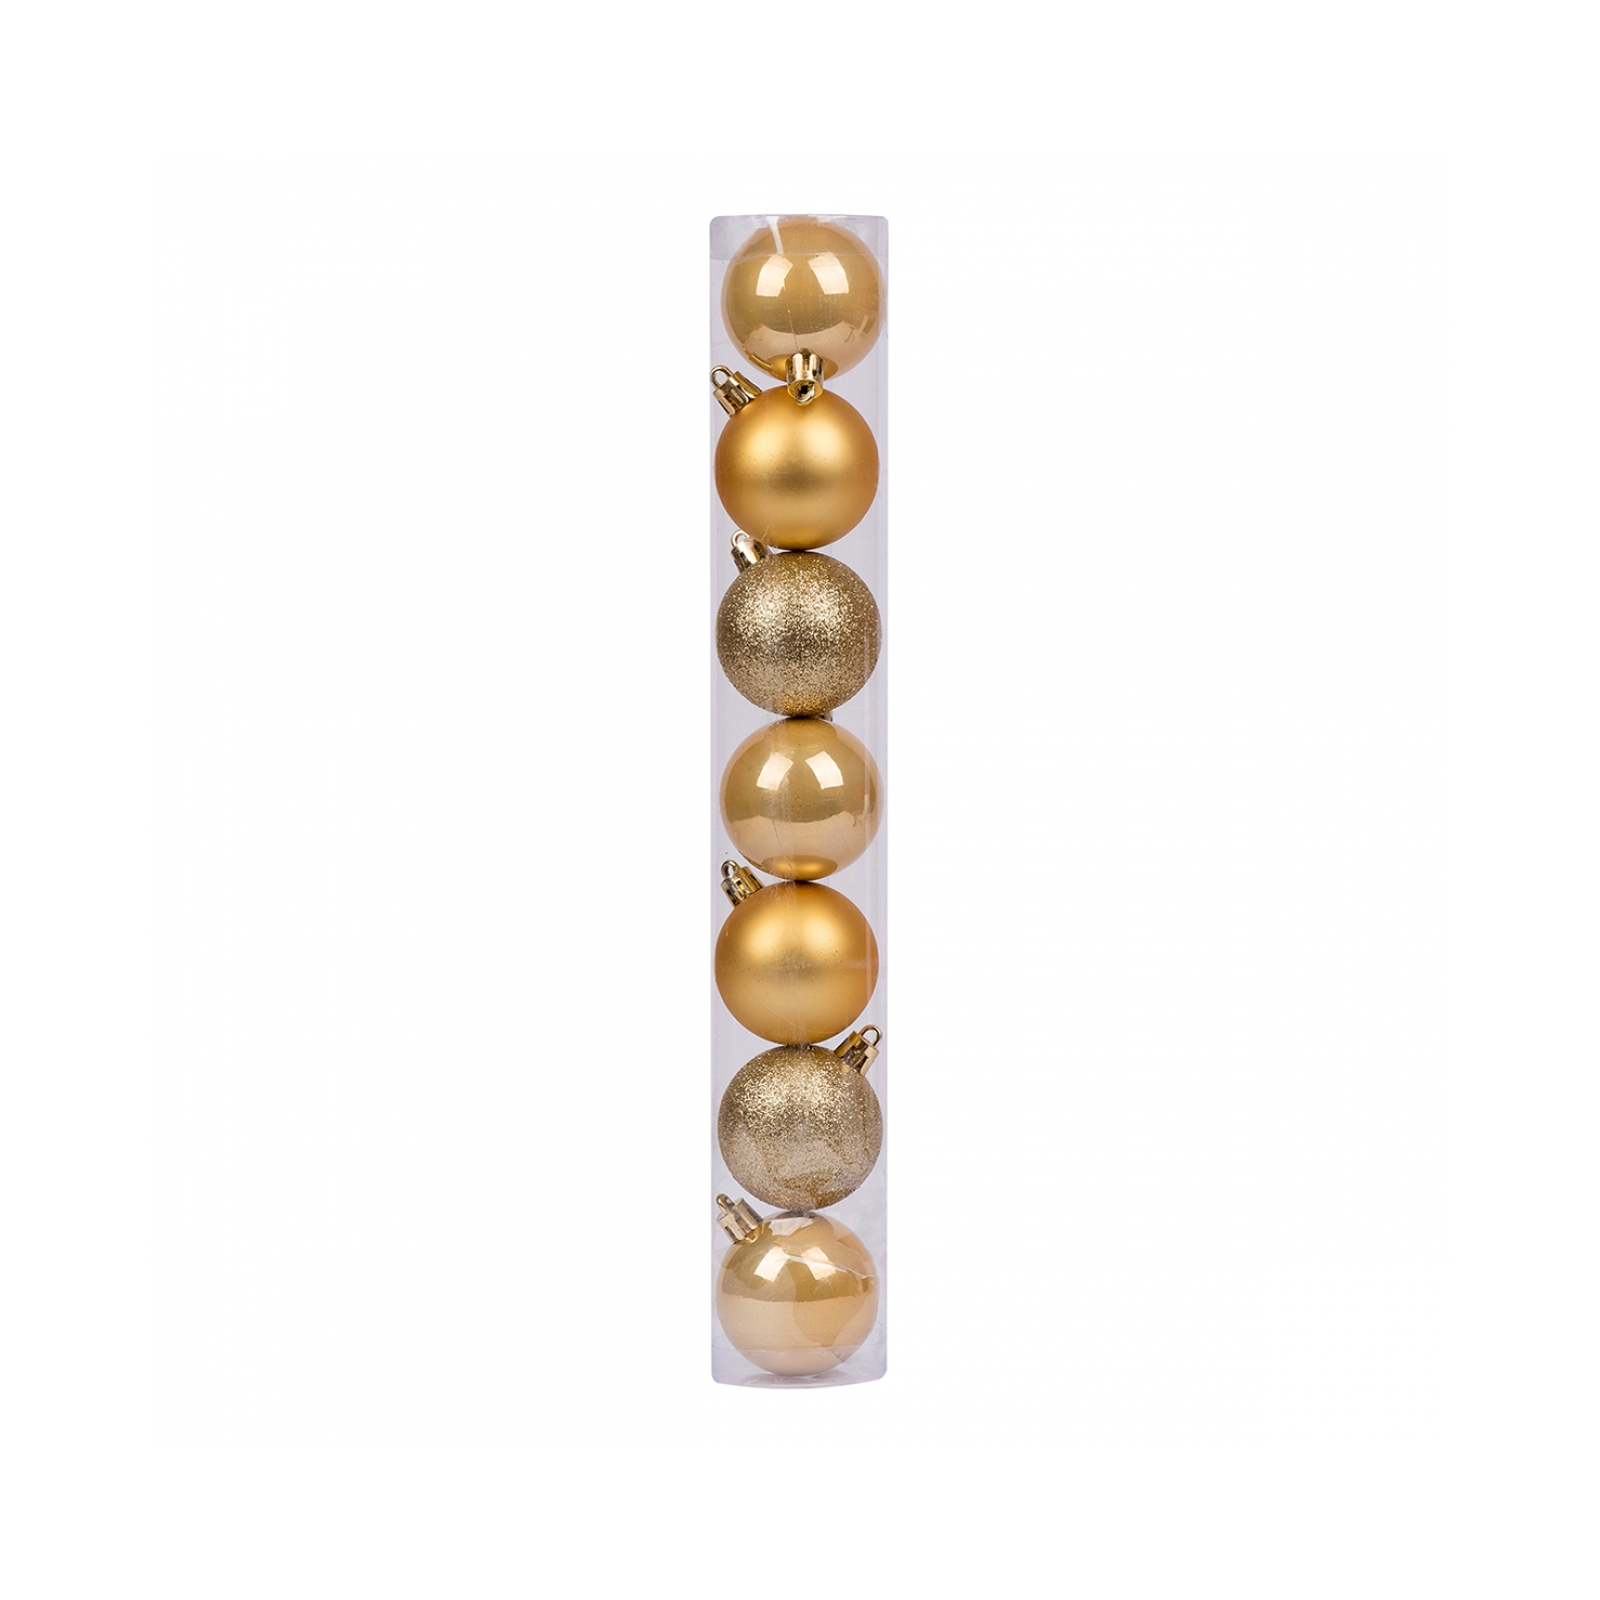 Елочная игрушка Novogod`ko 7 шт золото 4 см (974012)